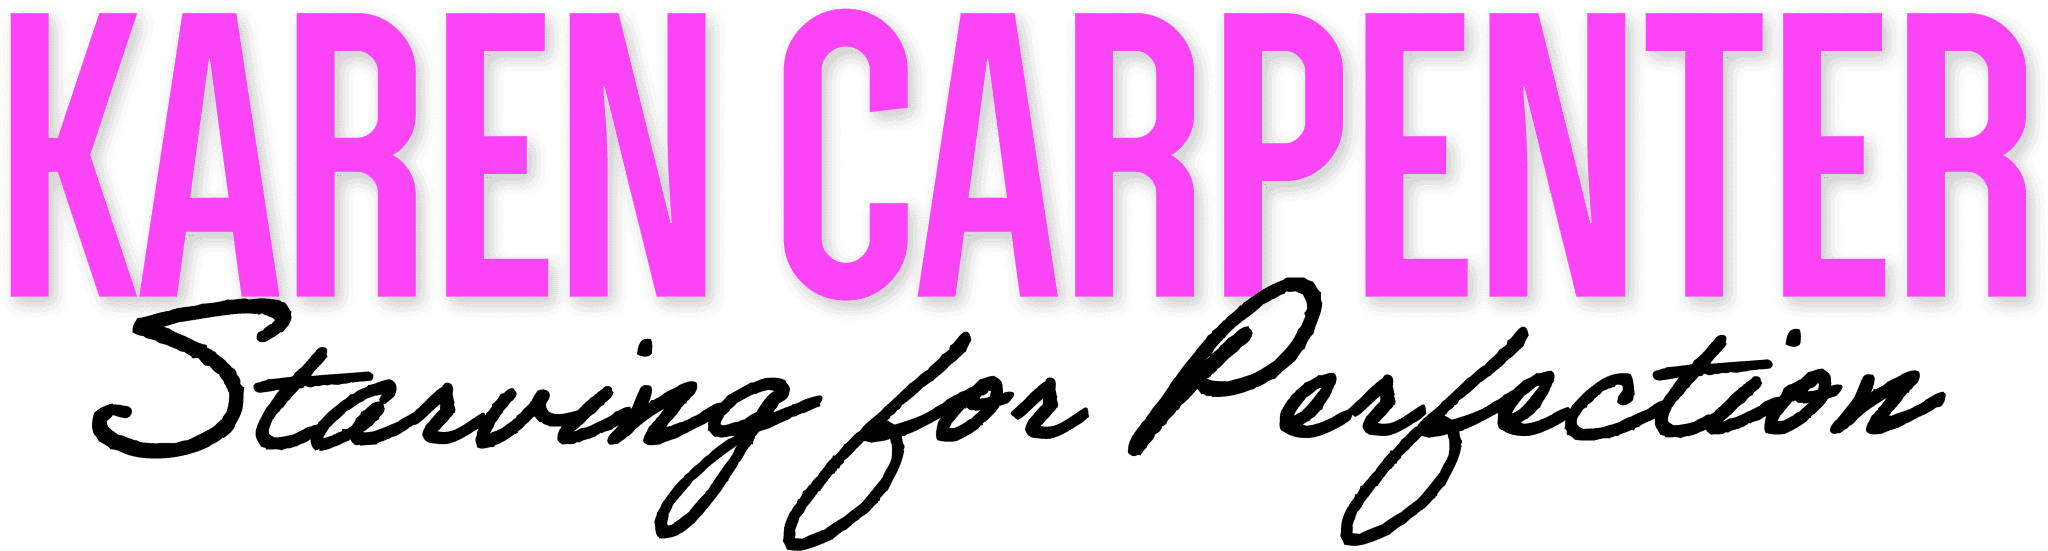 Karen Carpenter: Starving for Perfection logo